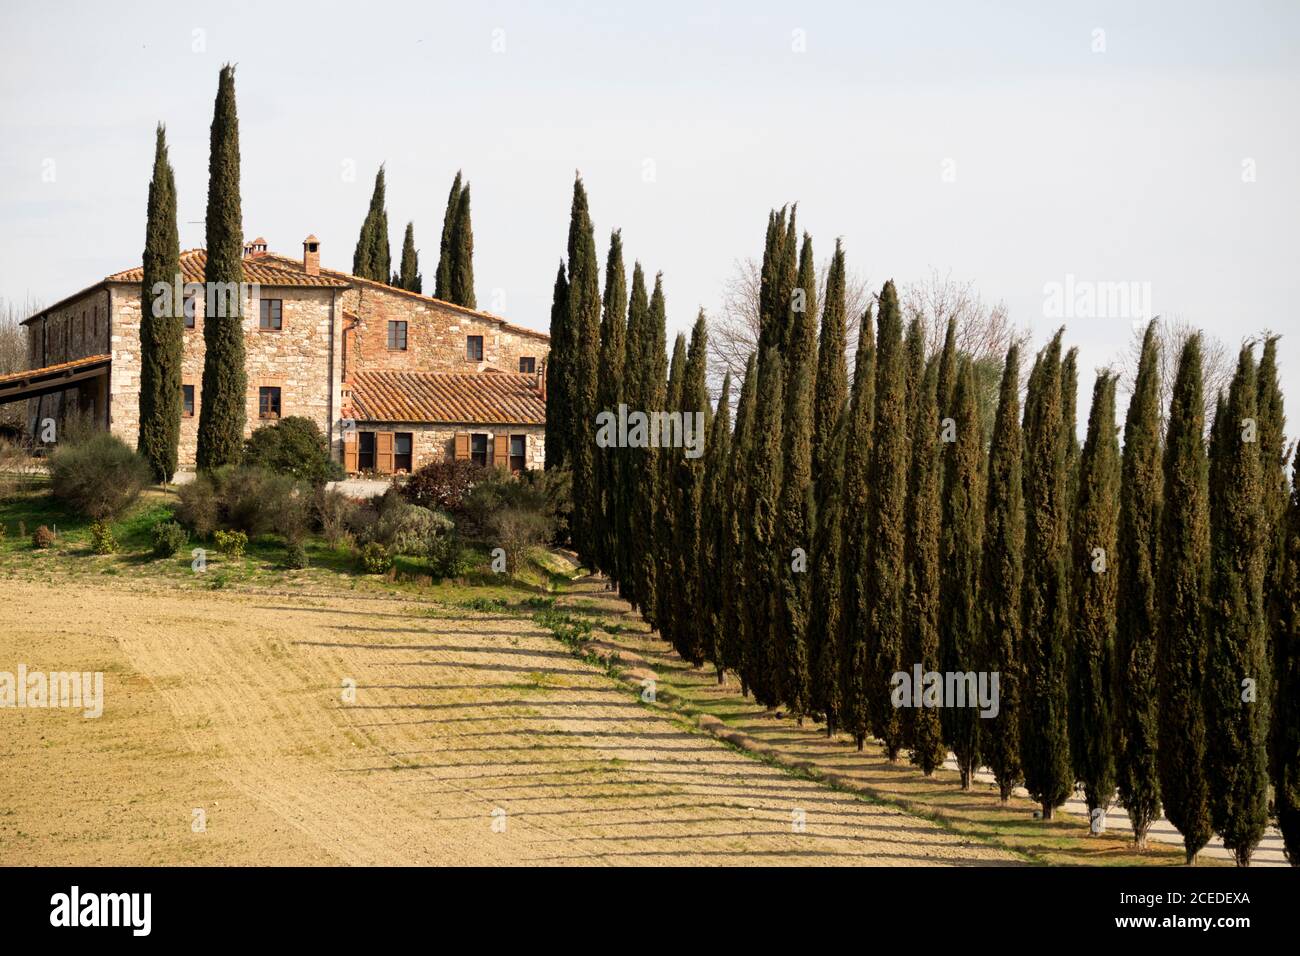 Agriturismo in Toscana centrale e paesaggio typicalc di Toscana, Italia Foto Stock